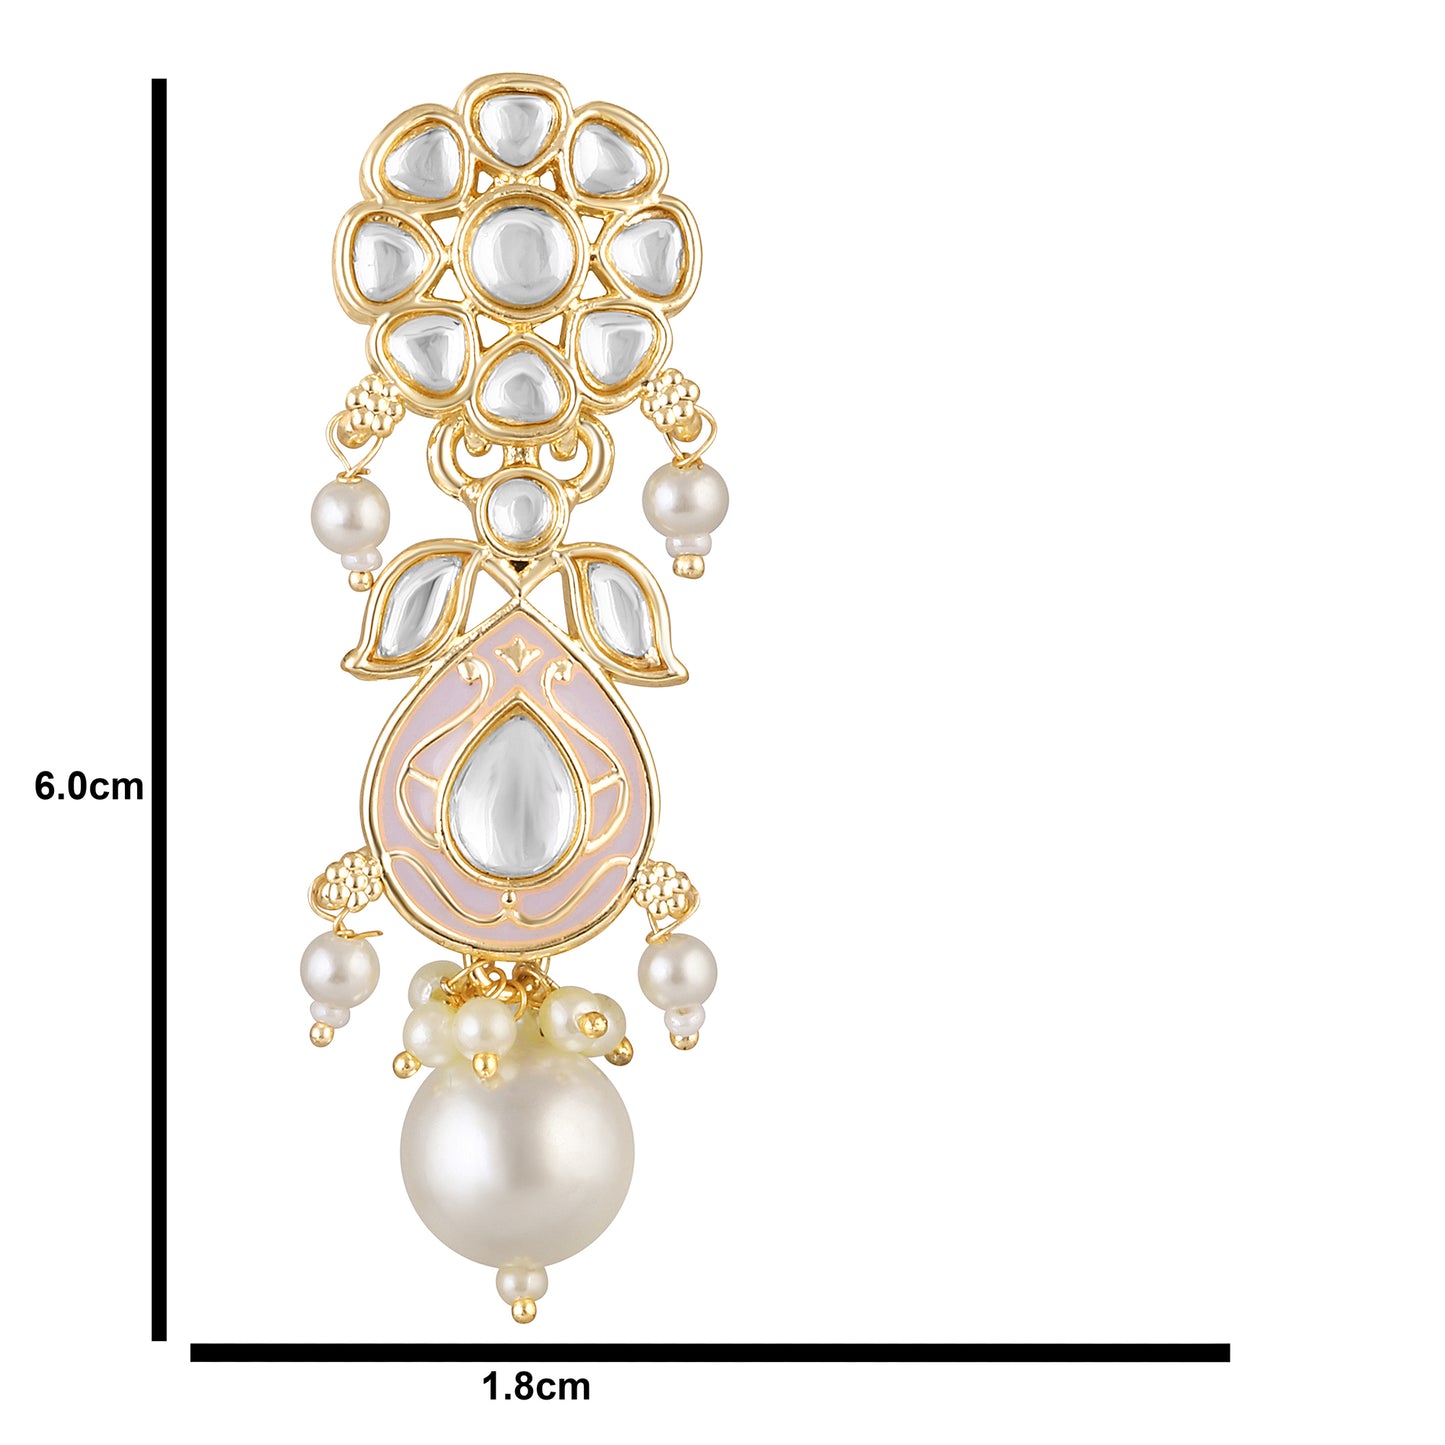 Bdiva 18K Gold Plated Pink Kundan Meenakari Drop Earrings with Semi Cultured Pearls.